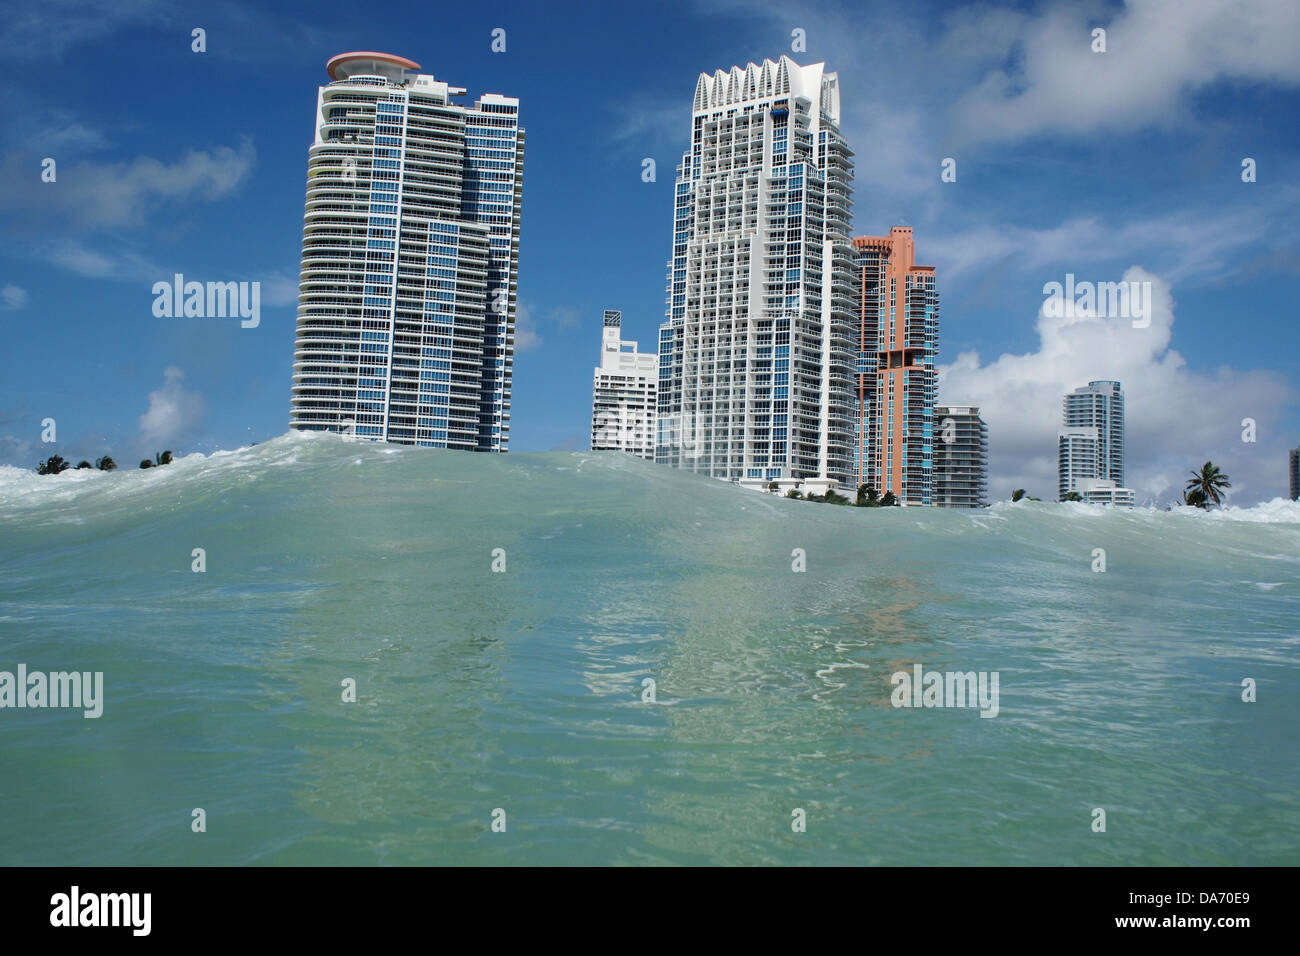 Oceano onde che arrivano a riva presso la South Beach di Miami, Florida, Stati Uniti d'America. A causa di cambiamenti climatici, di allagamento è diventato un problema per la bassa isola piatta. Foto Stock